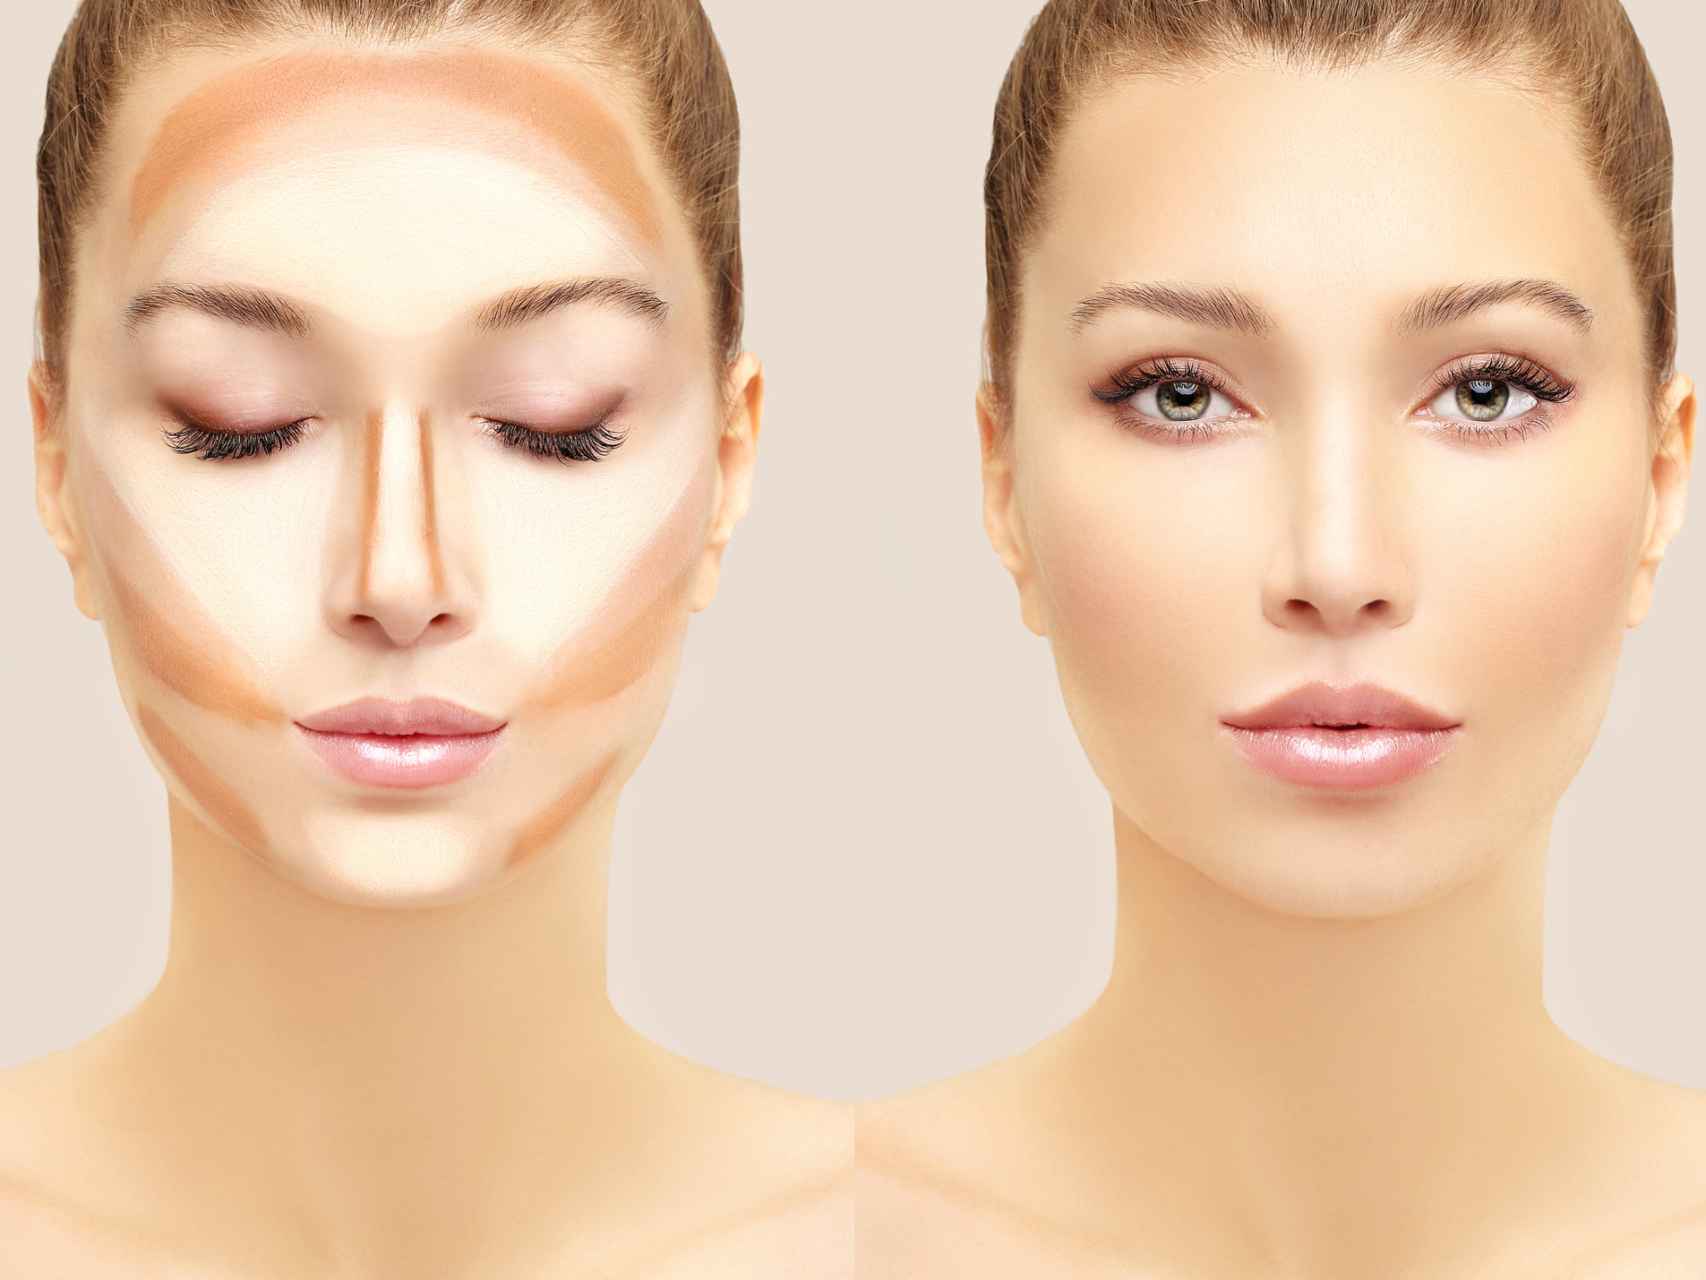 Descubre las mejores muestras de maquillaje para realzar tu belleza